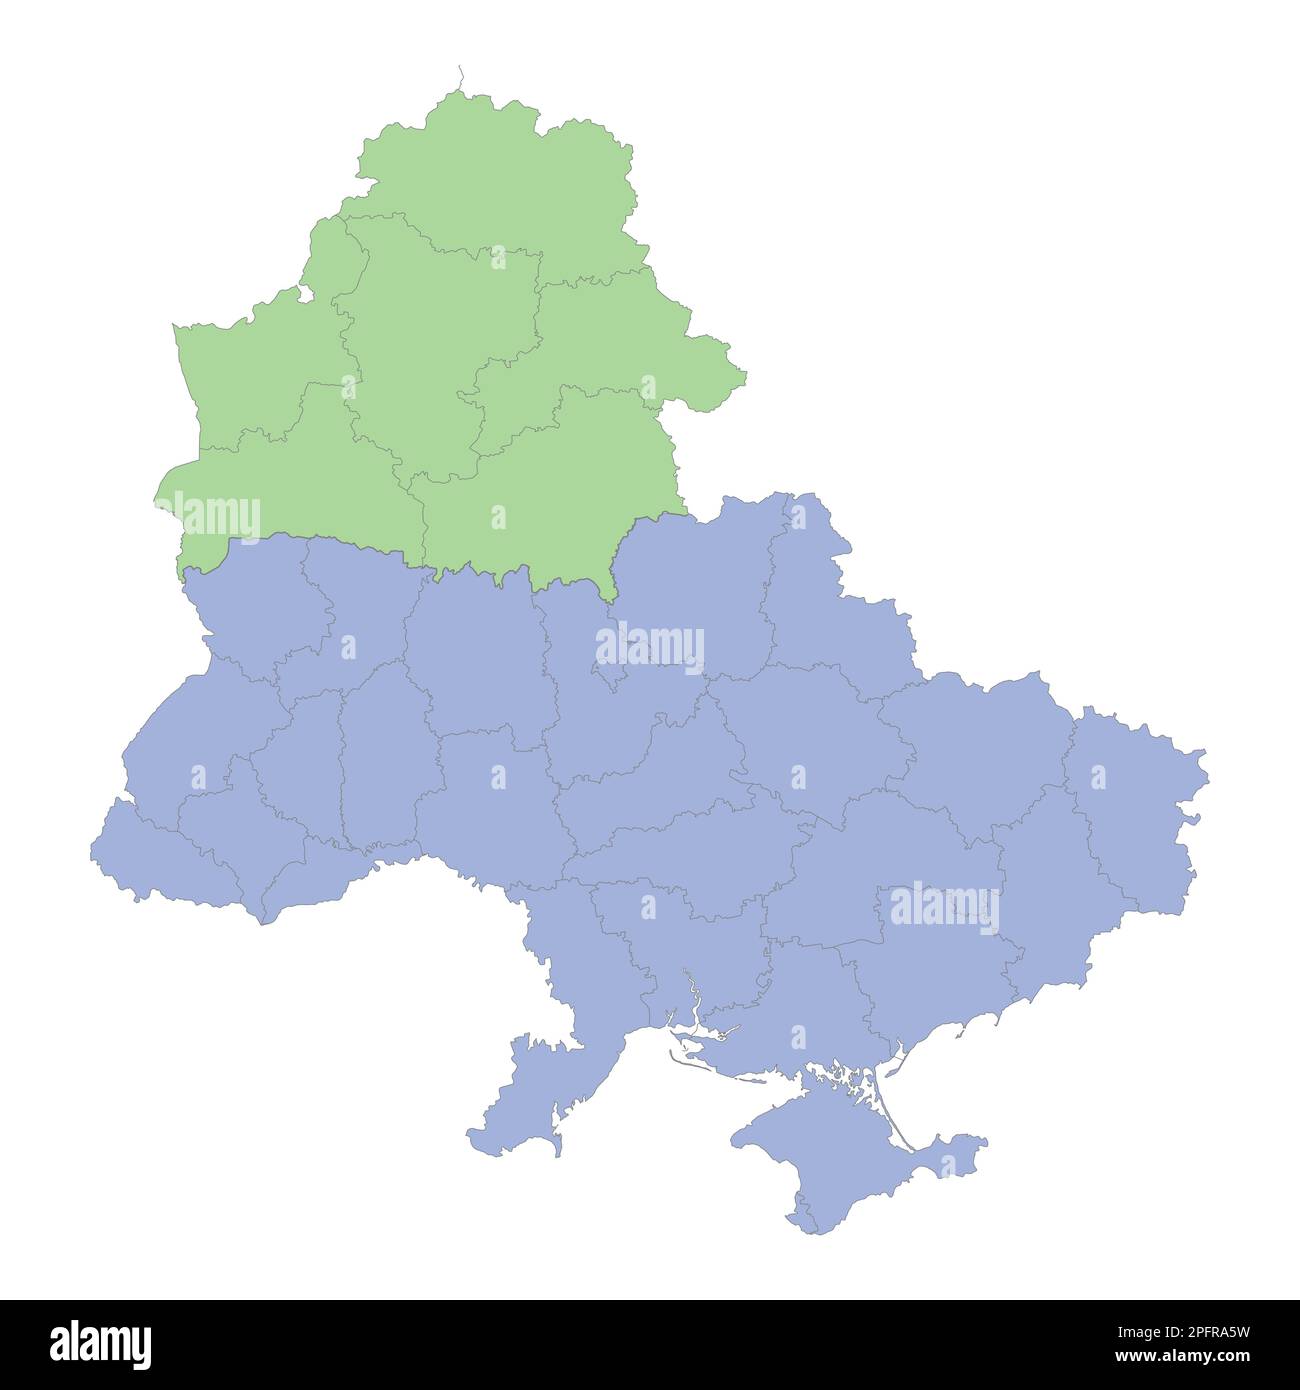 Mappa politica di alta qualità di Ucraina e Bielorussia con i confini delle regioni o province. Illustrazione vettoriale Illustrazione Vettoriale